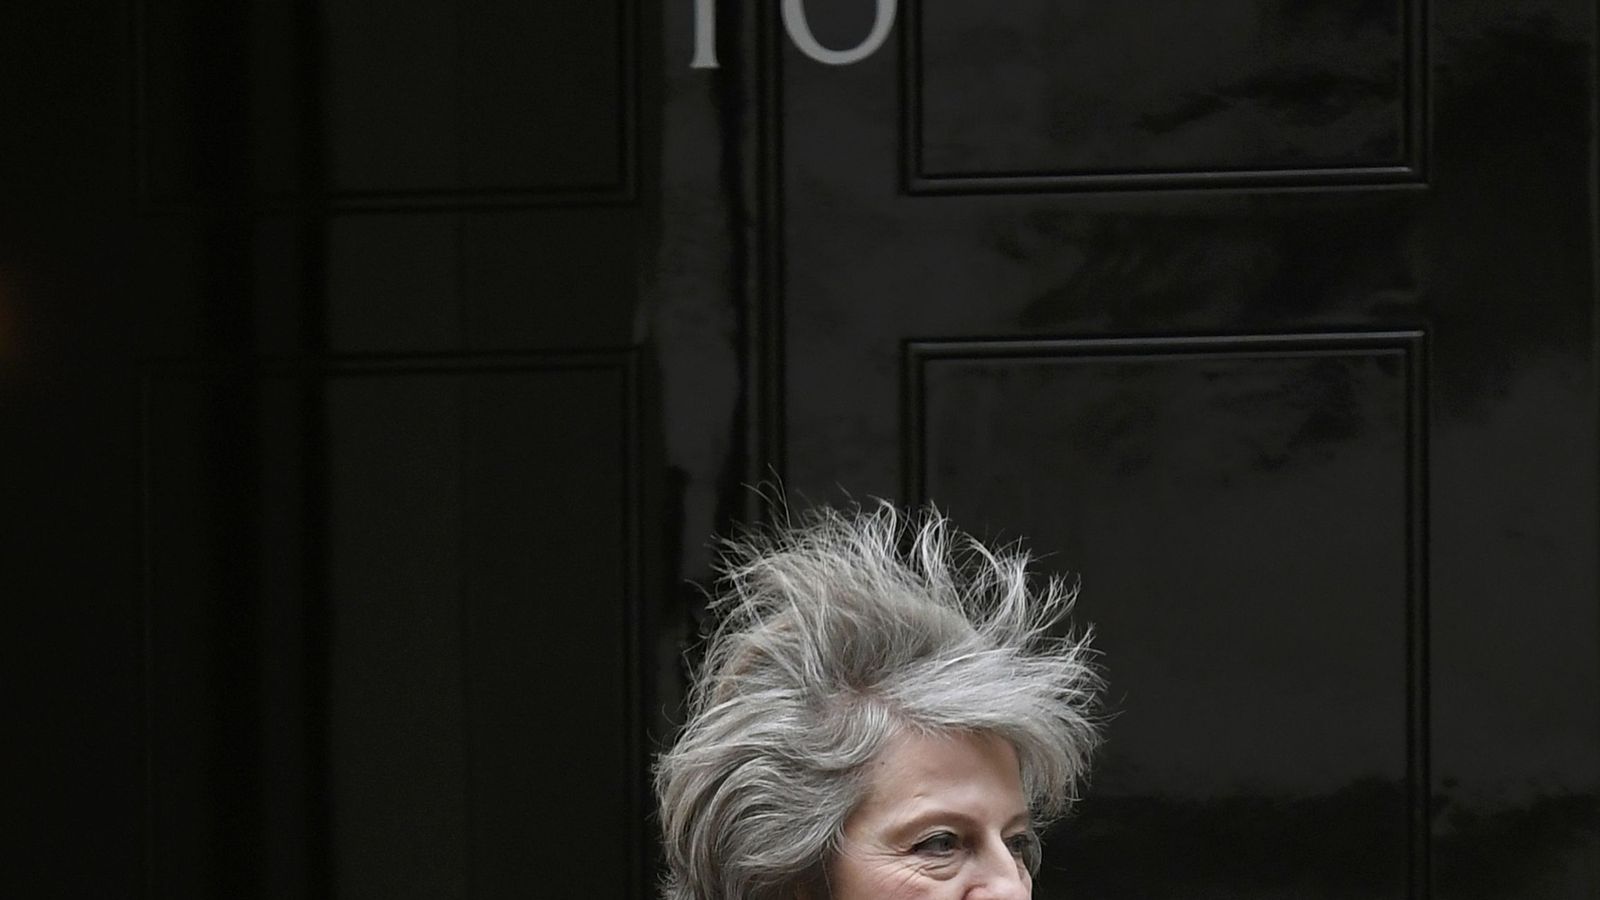 Foto: La primera ministra del Reino Unido, Theresa May. (Reuters)